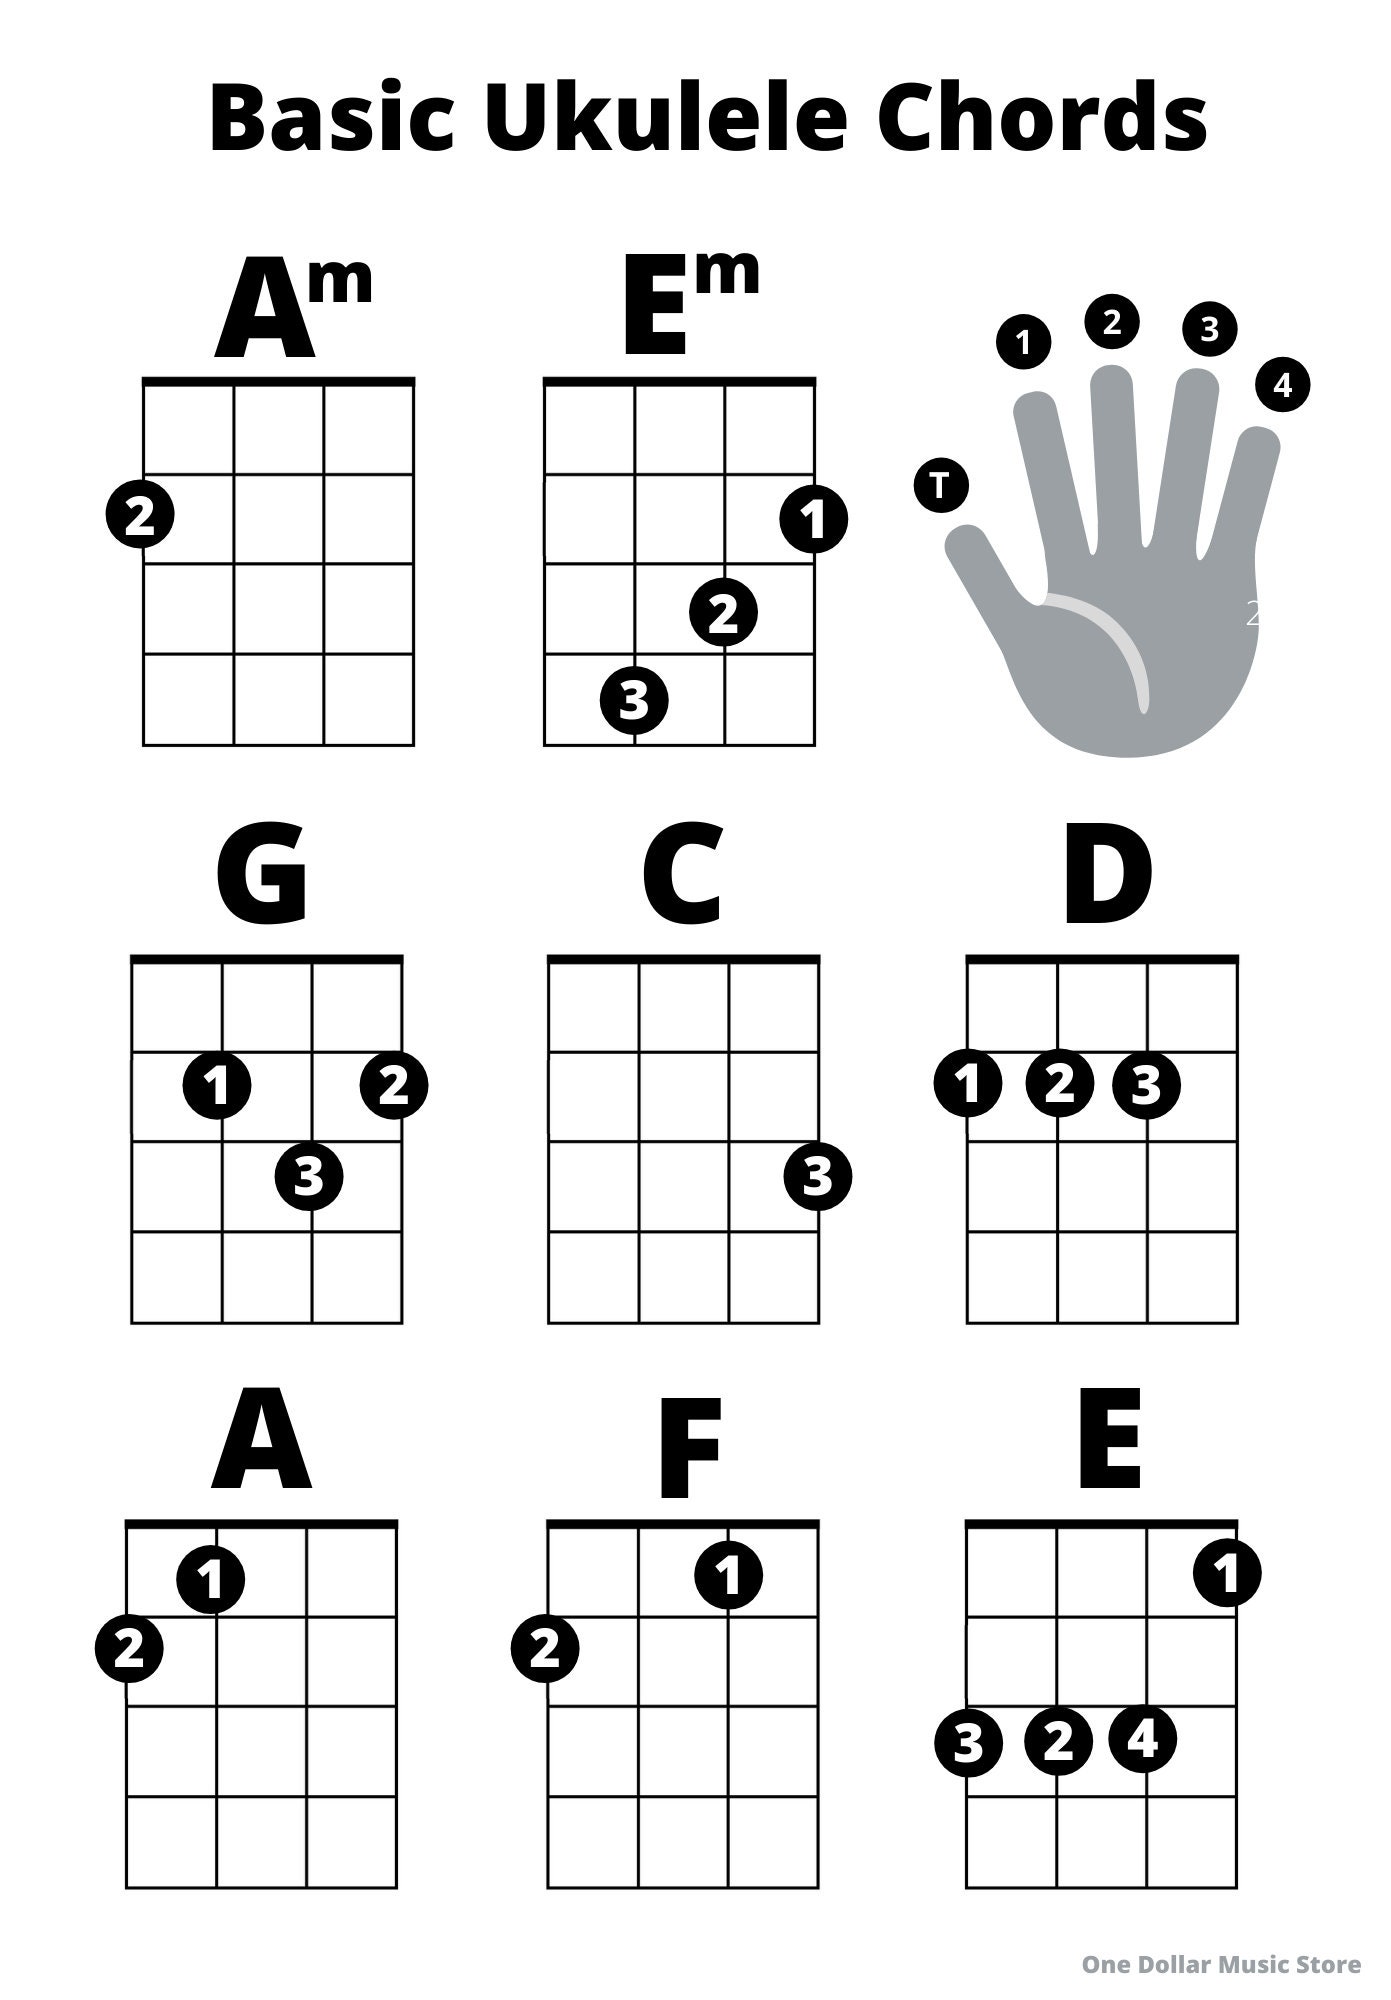 ukulele-for-everyone-beginner-ukelele-chords-sheet-ukulele-etsy-de